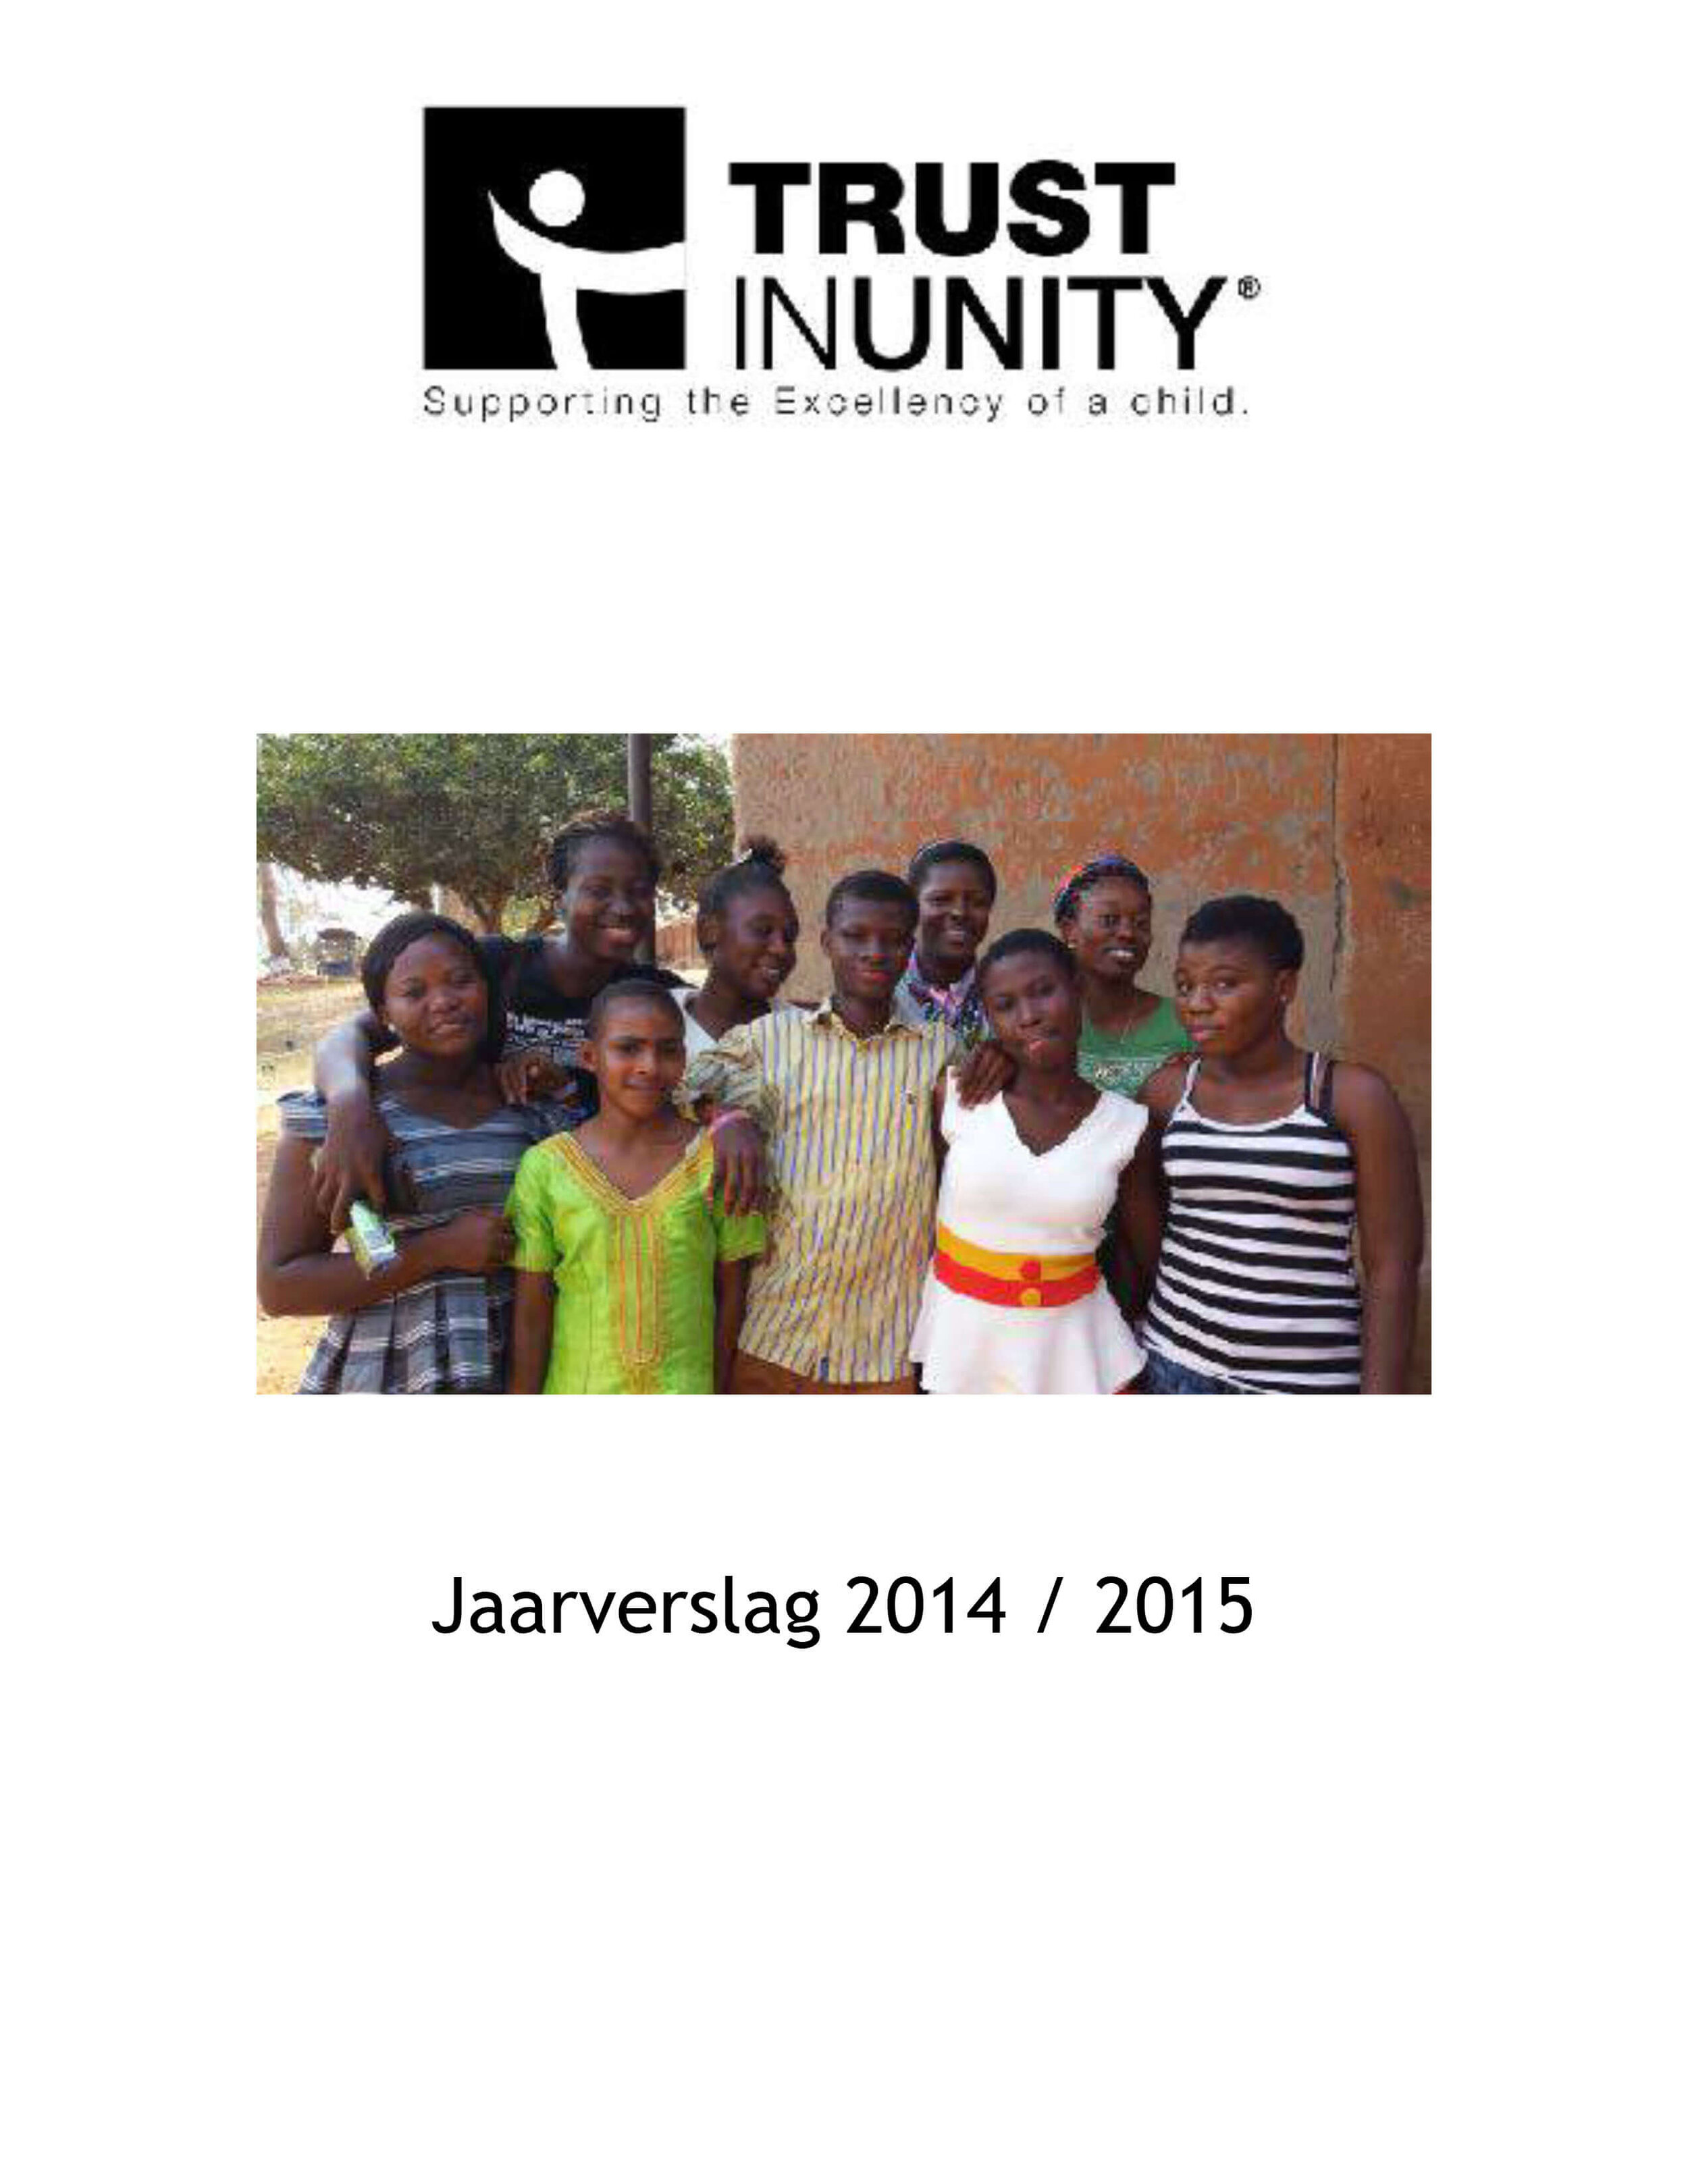 Trust in Unity, Jaarverslag 2014-2015.jpg